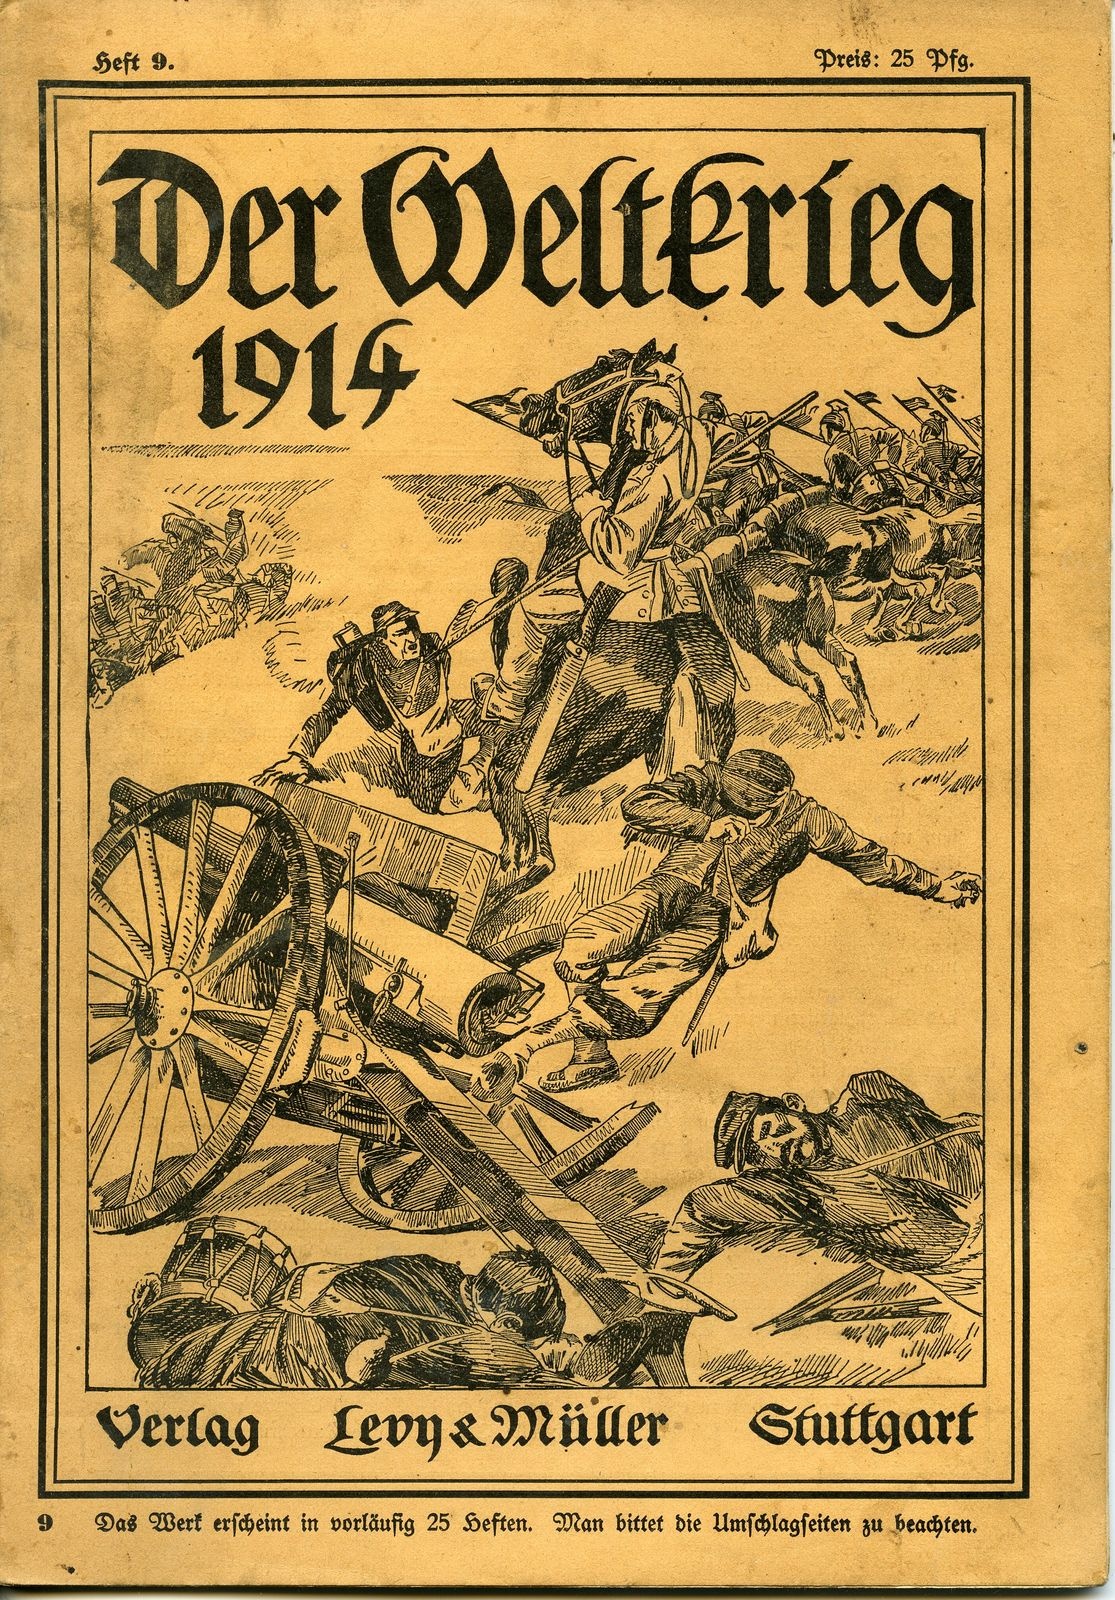 Zeitschrift "Der Weltkrieg 1914", Heft 9 (Historisches Museum der Pfalz, Speyer CC BY)